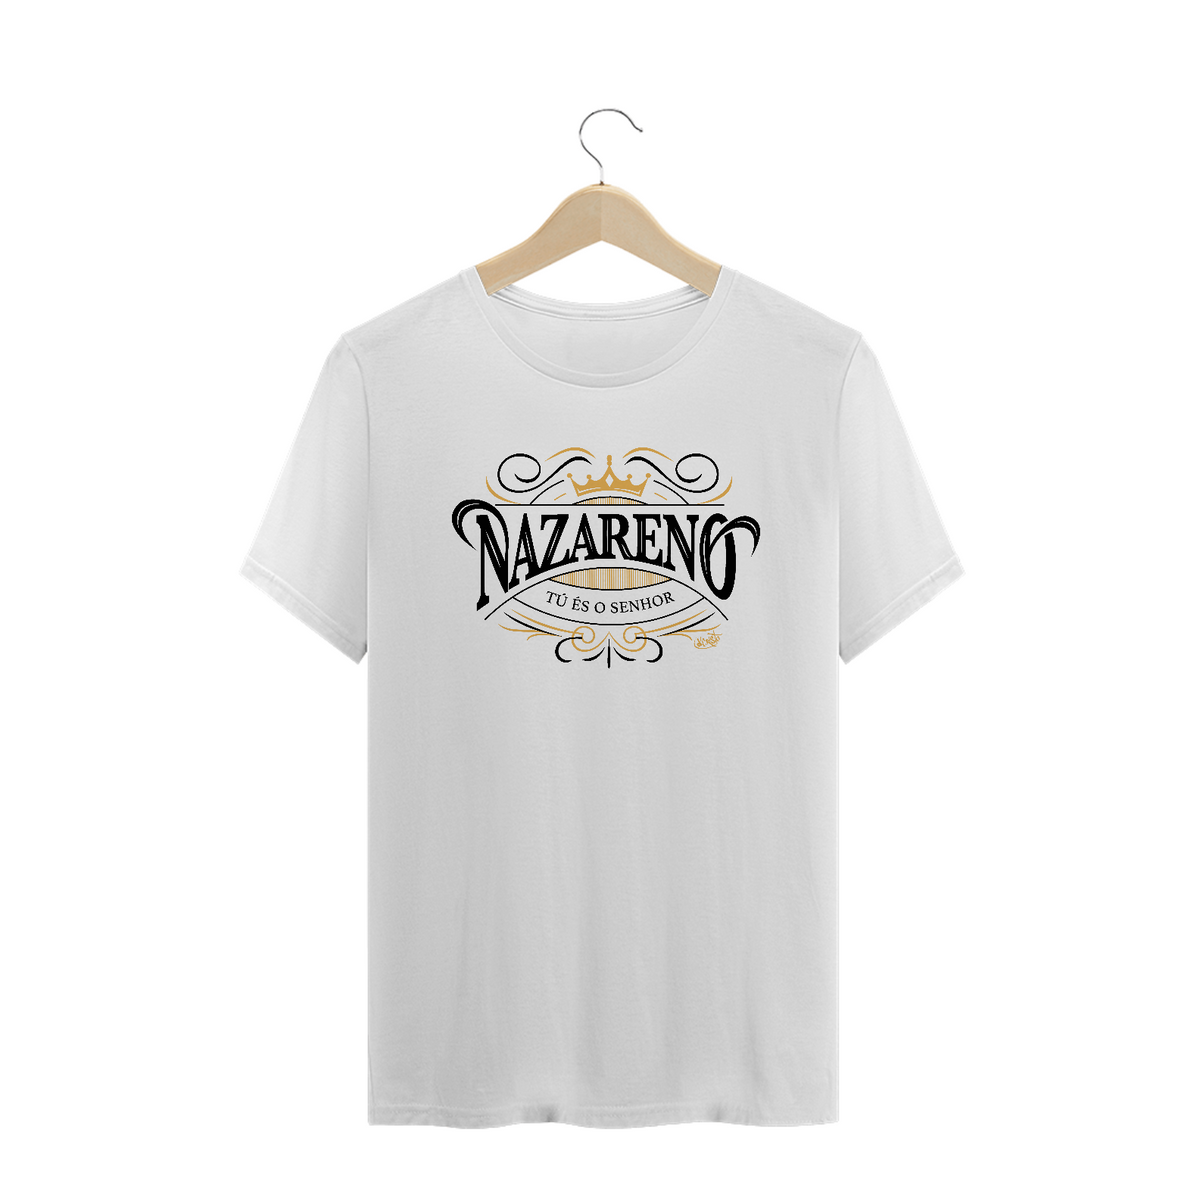 Nome do produto: Camiseta Nazareno (cores claras)